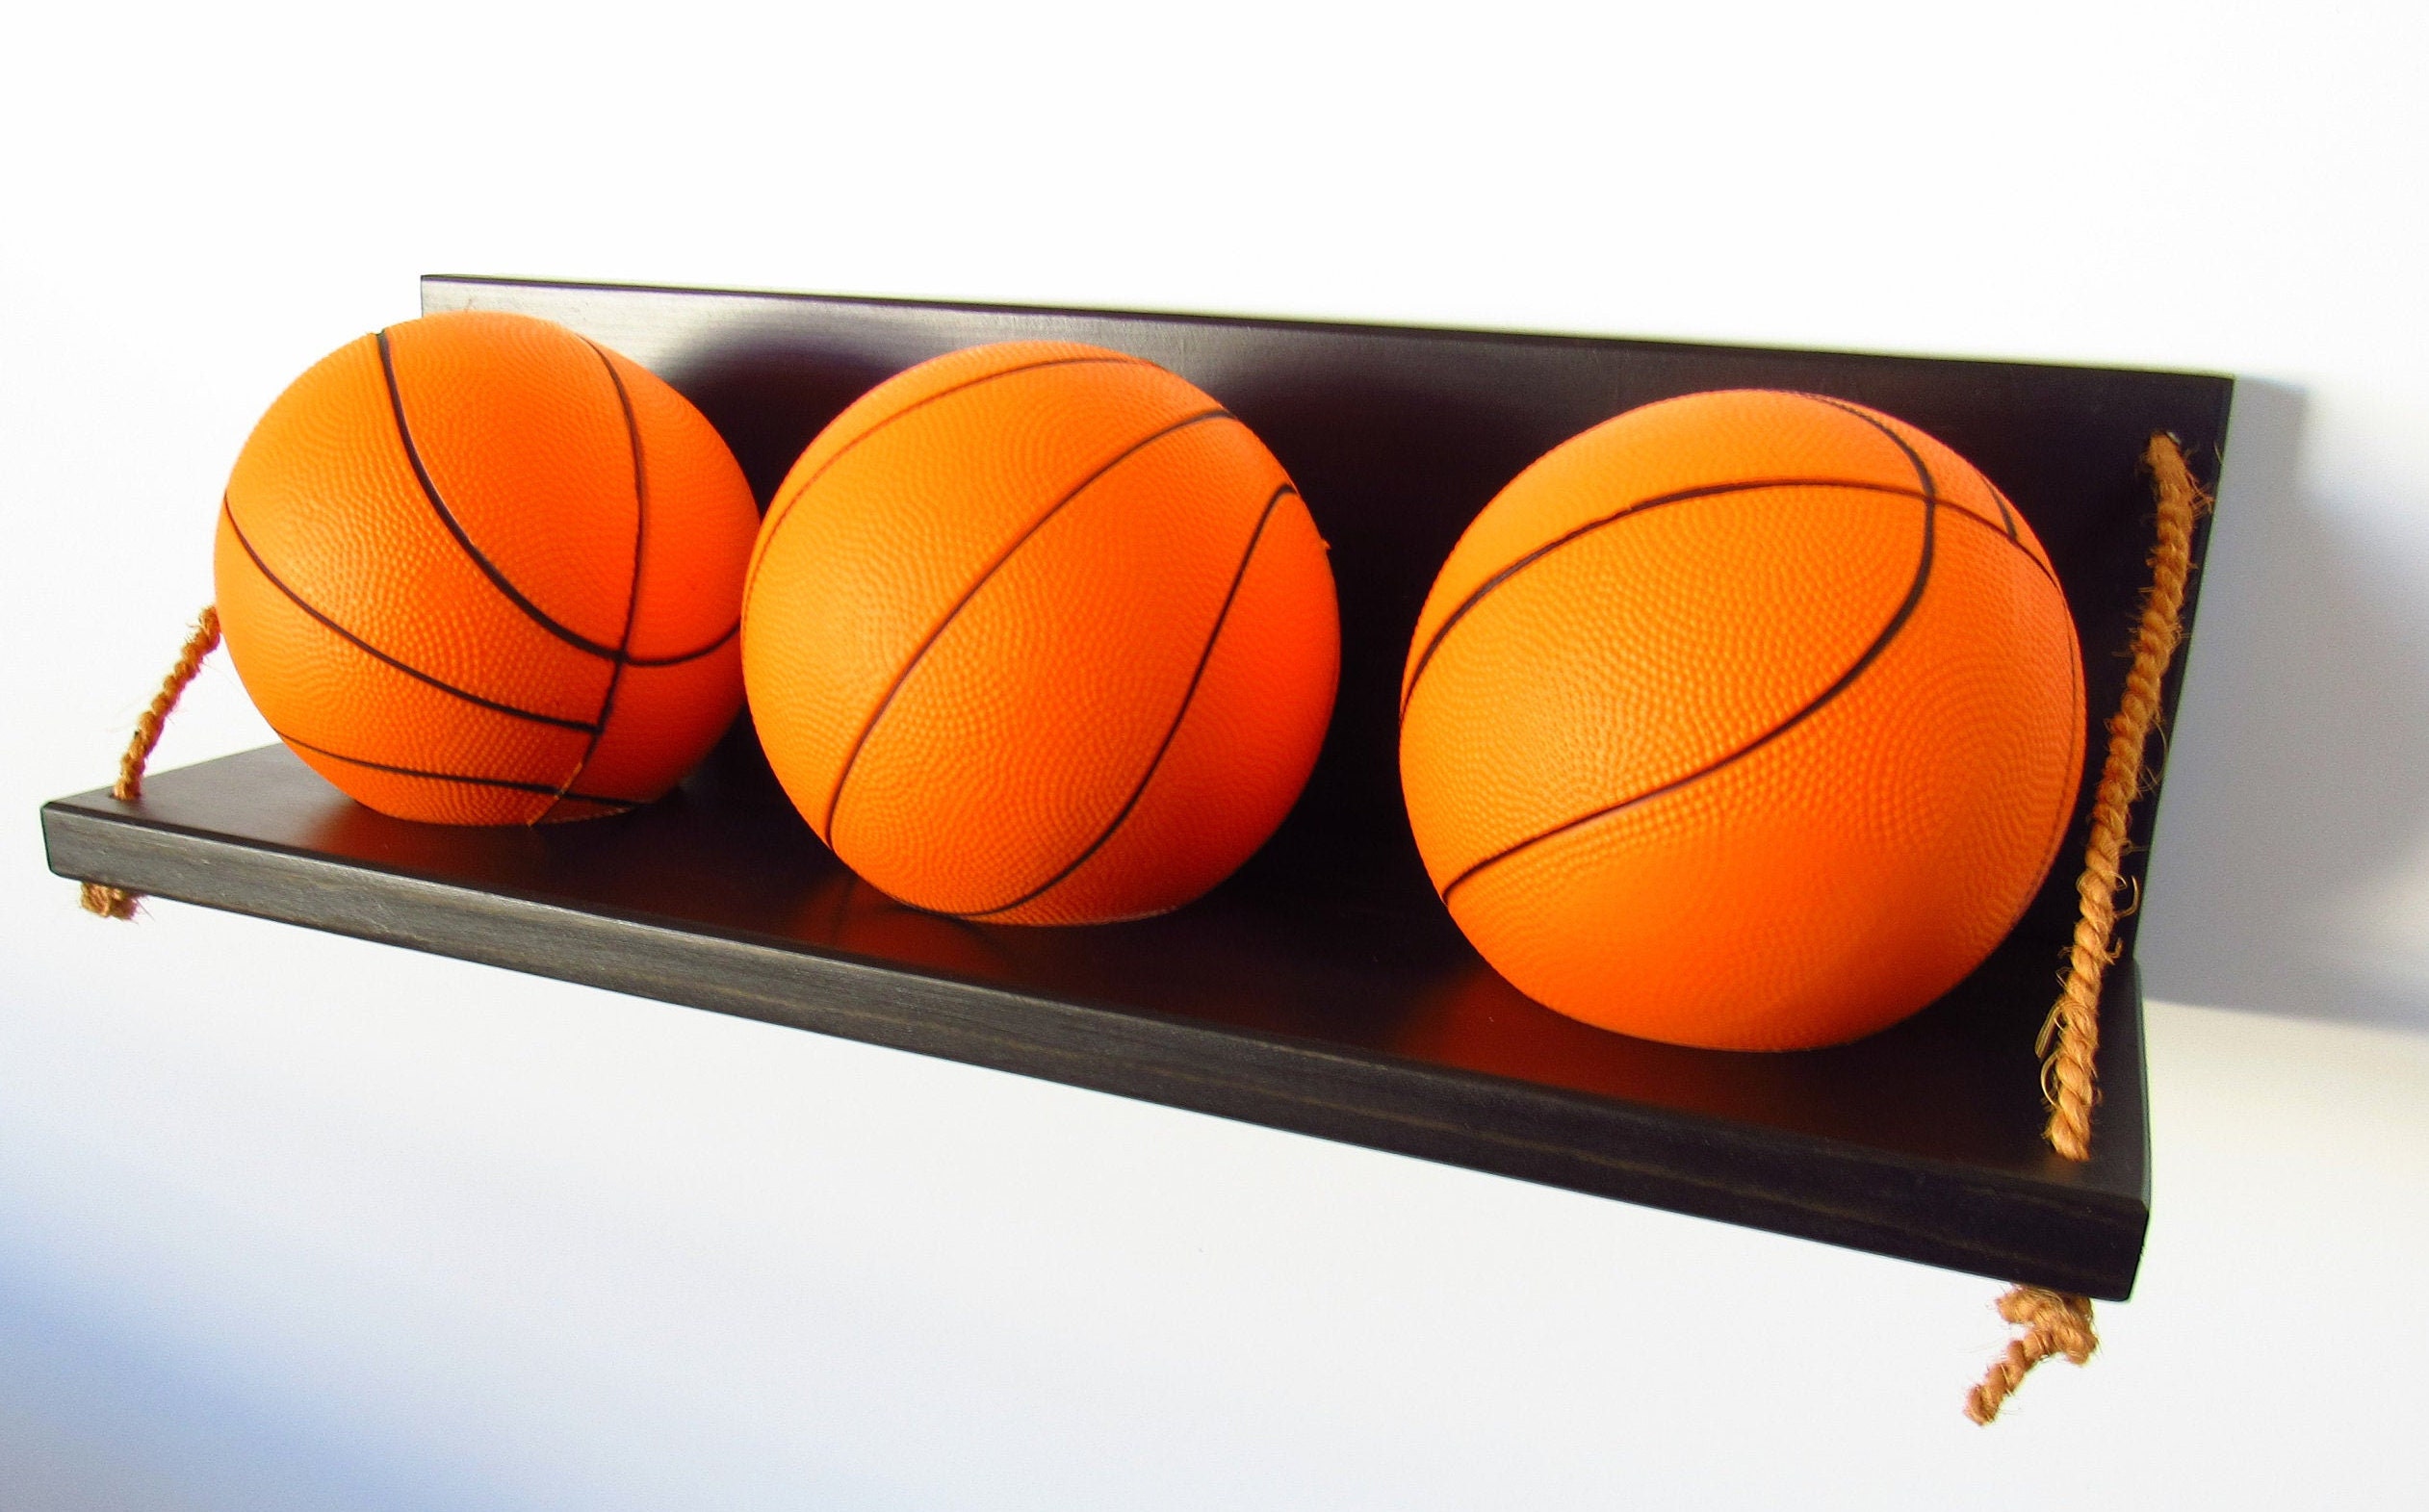 Mini support de basket avec trois ballons de basket en mousse